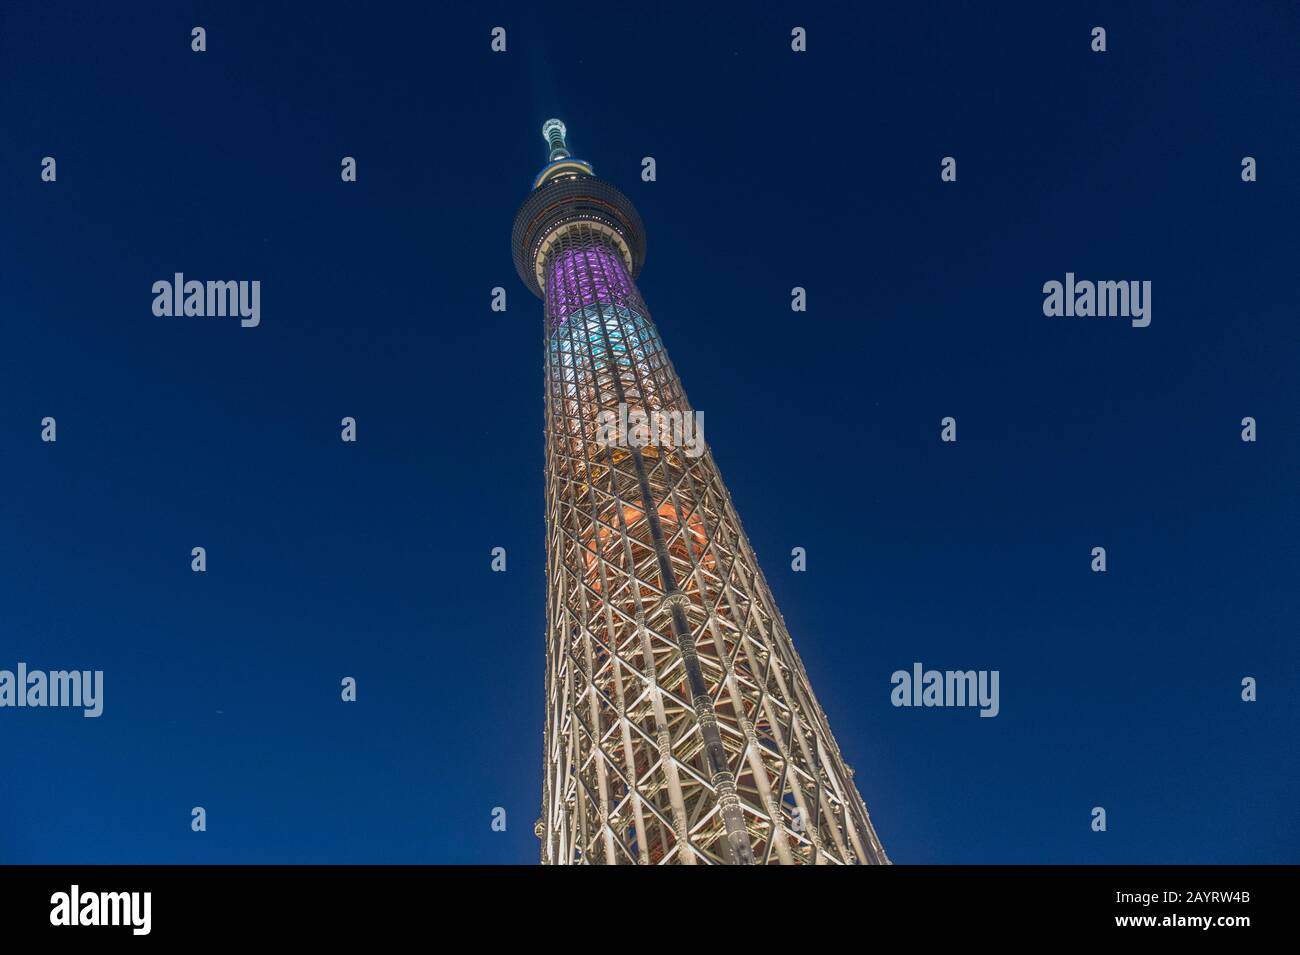 Foto nocturna del Tokyo Skytree es la torre más alta del mundo y es una torre de radiodifusión, restaurante y observación en Sumida, Tokio, Japón. Foto de stock